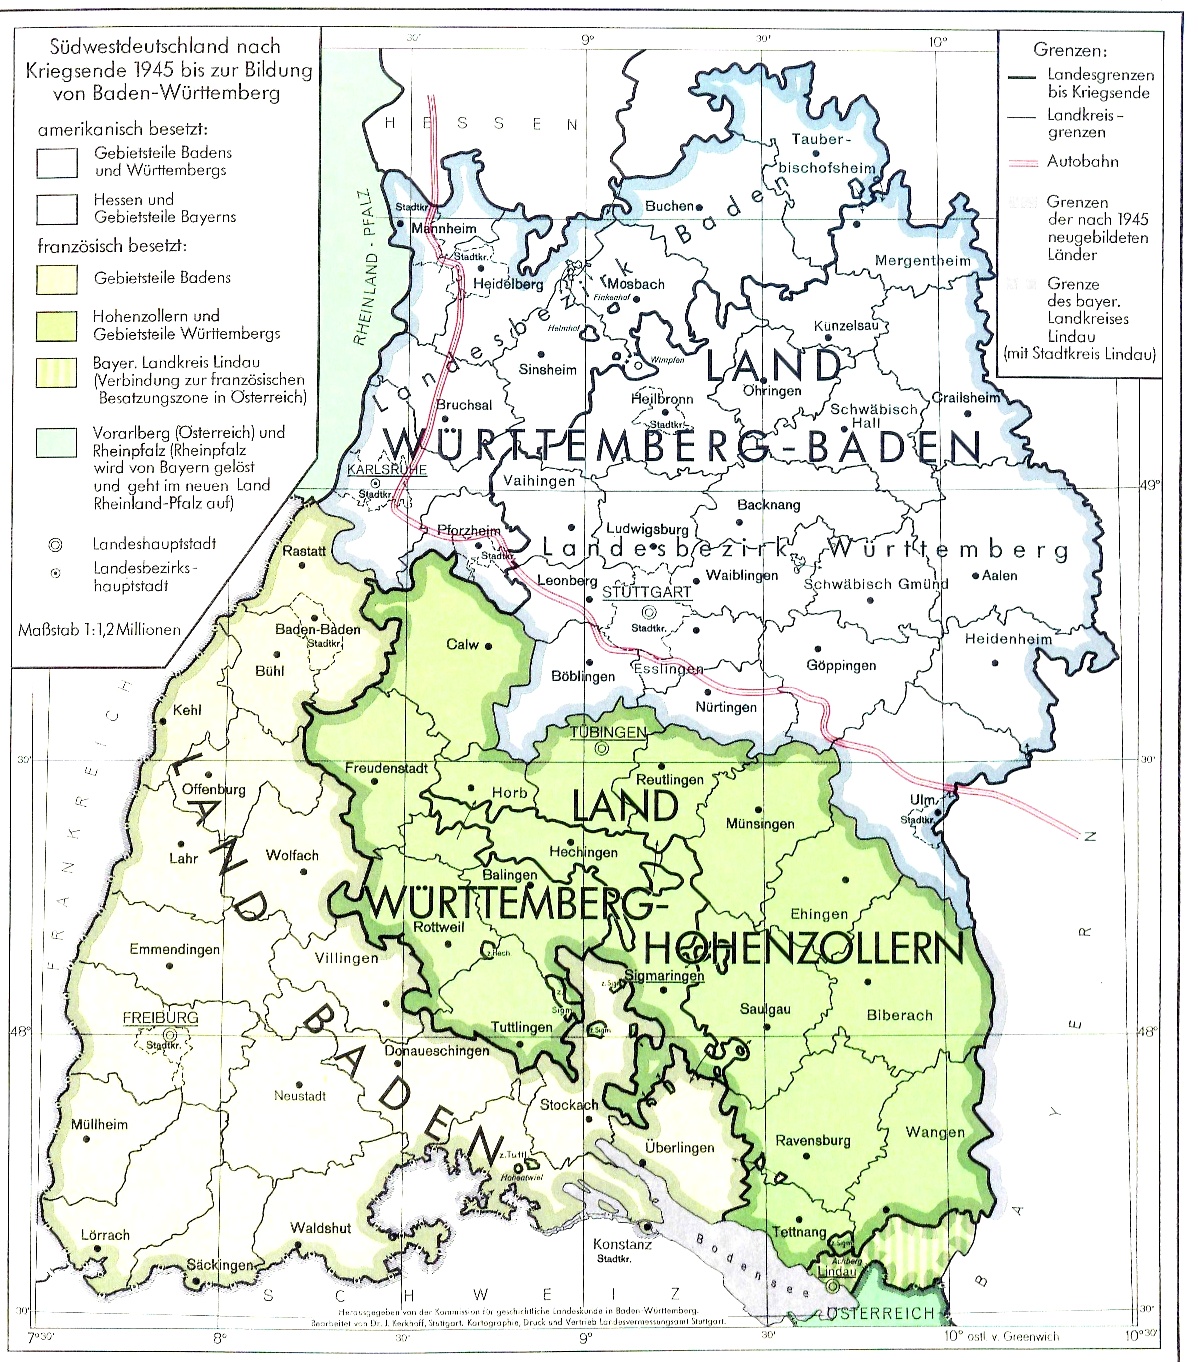 Die Karte zeigt Südwestdeutschland zwischen Kriegsende 1945 und der Bildung des Landes Baden-Württemberg. Südwestdeutschlands war dabei in drei Teilgebiete aufgeteilt: Das amerikanisch besetzte Land Würrtemberg im Norden, das französisch besetzte Land Baden im äußersten Südwesten, sowie das gleichfalls französisch besetzt Land Württemberg Hohenzollern im Südosten.